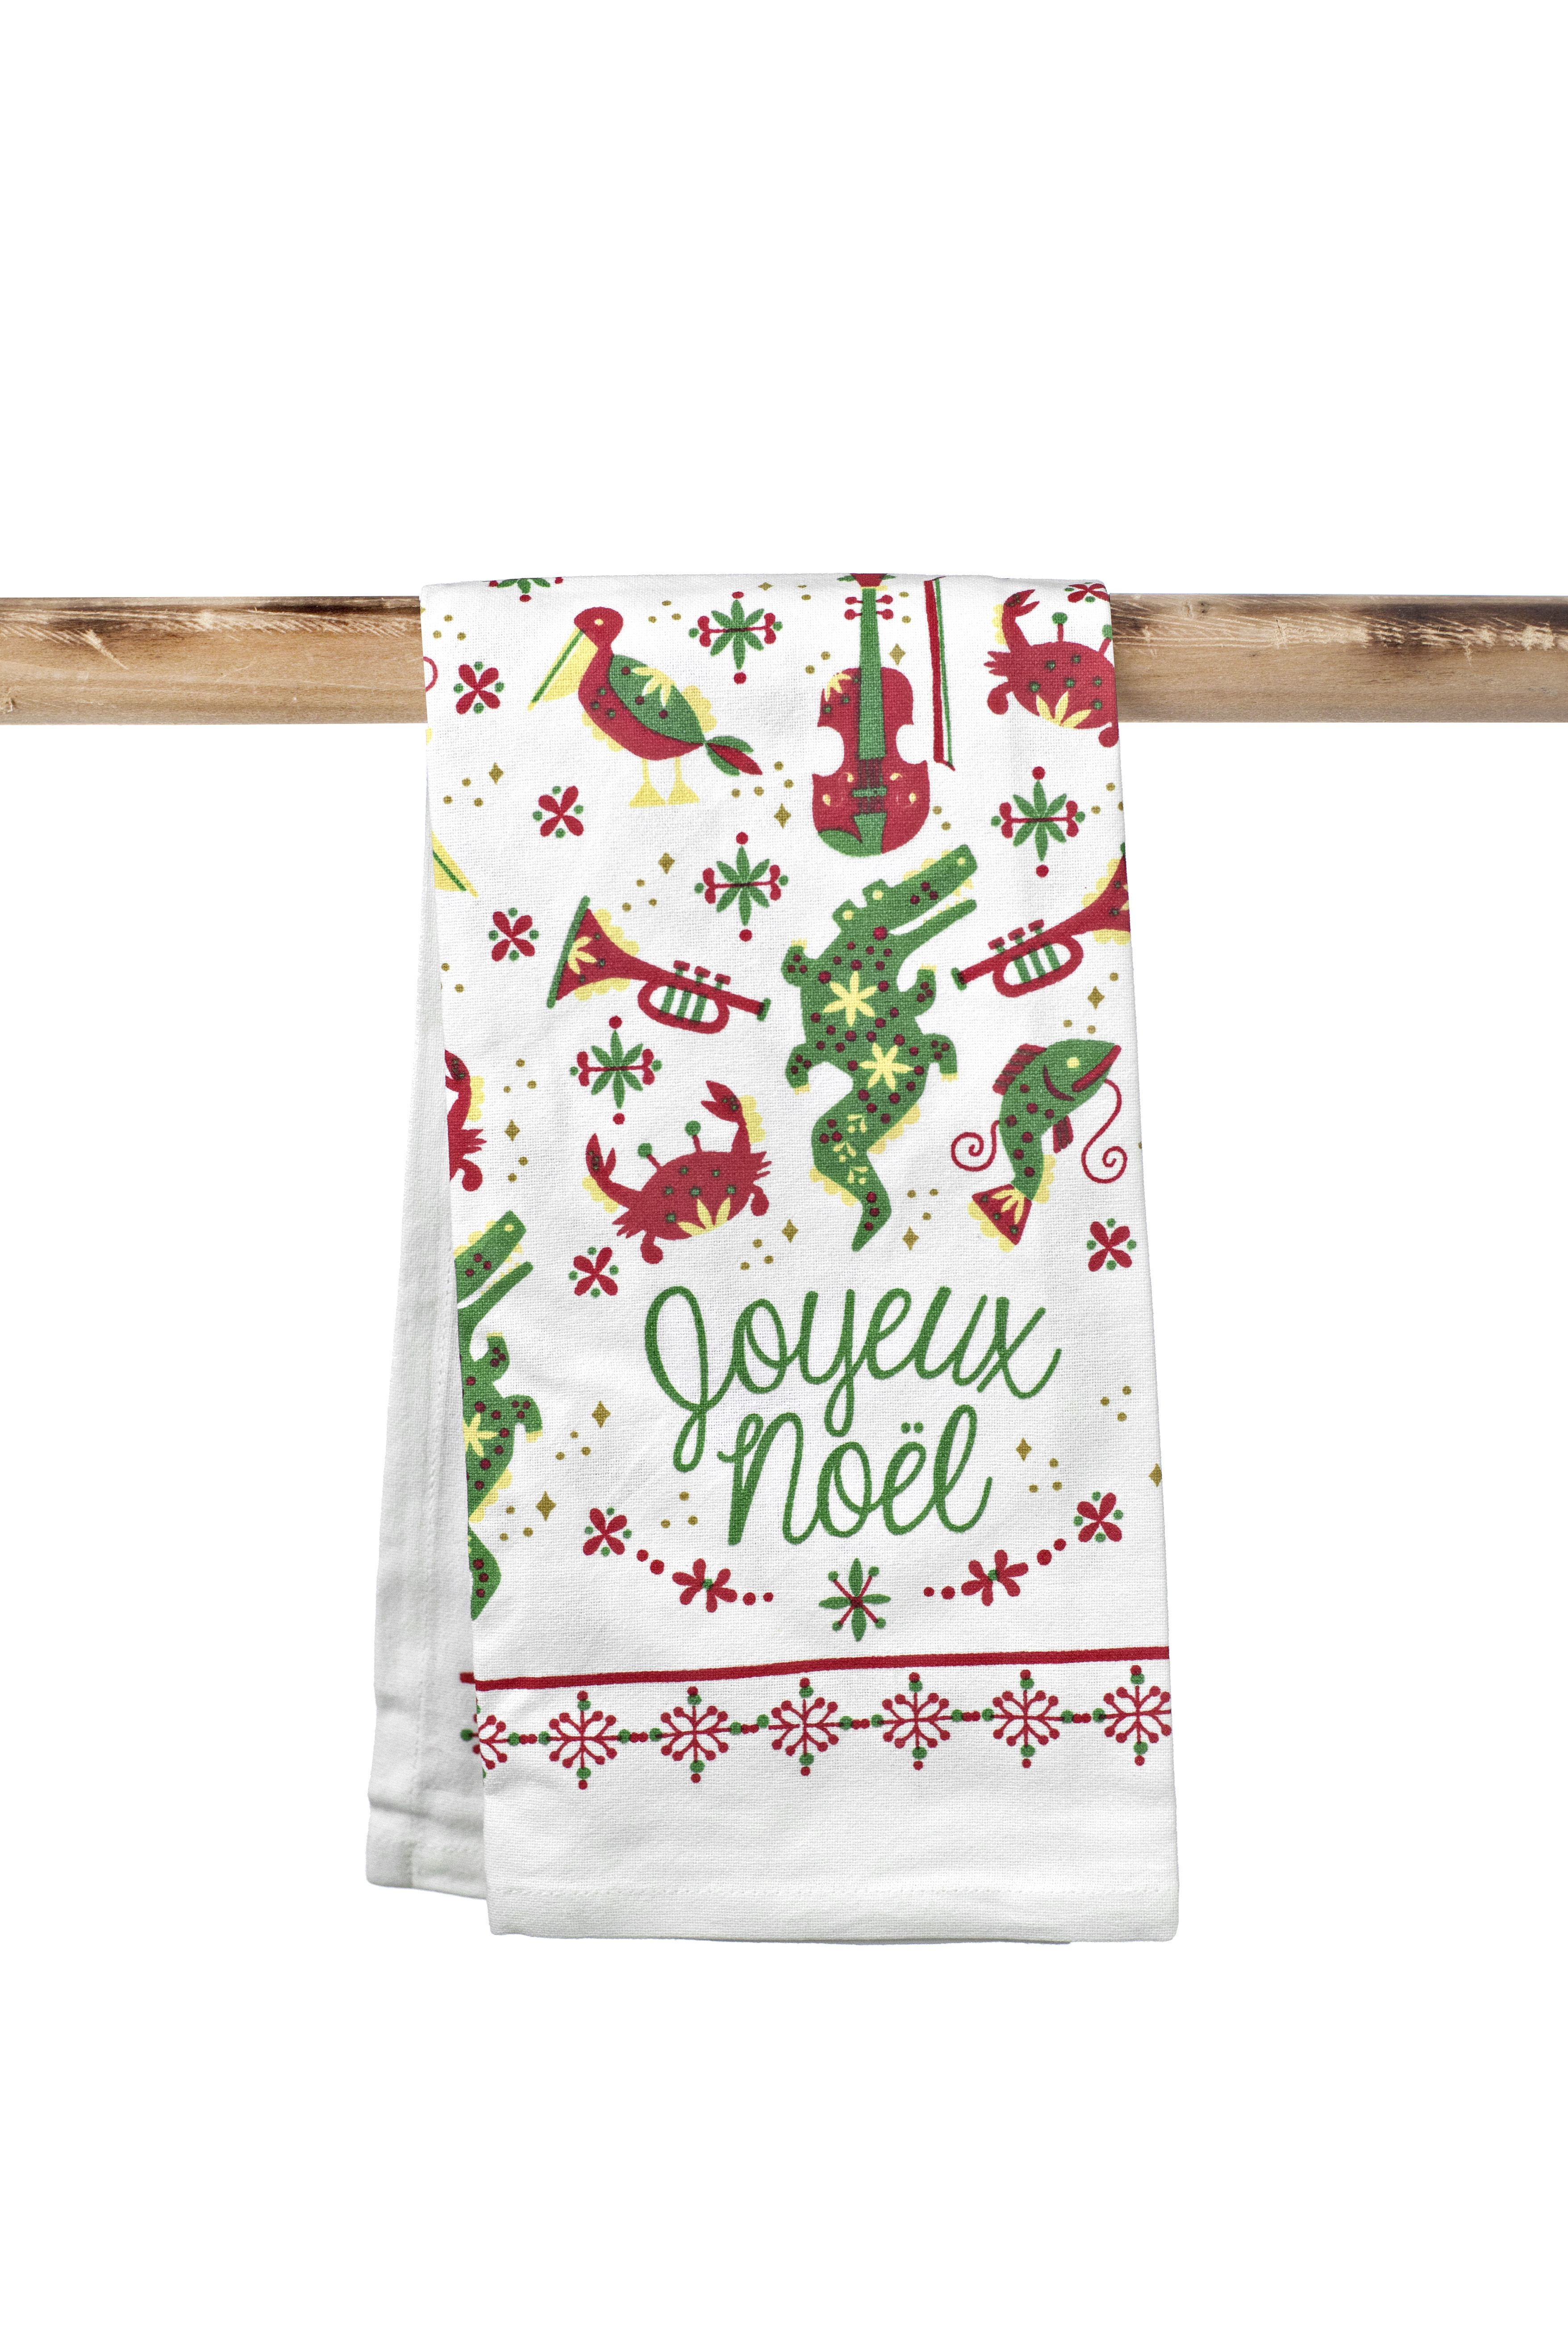 https://www.theparishline.com/wp-content/uploads/2018/06/10229-Kitchen-Towel-Joyeux-Noel-Christmas.jpg